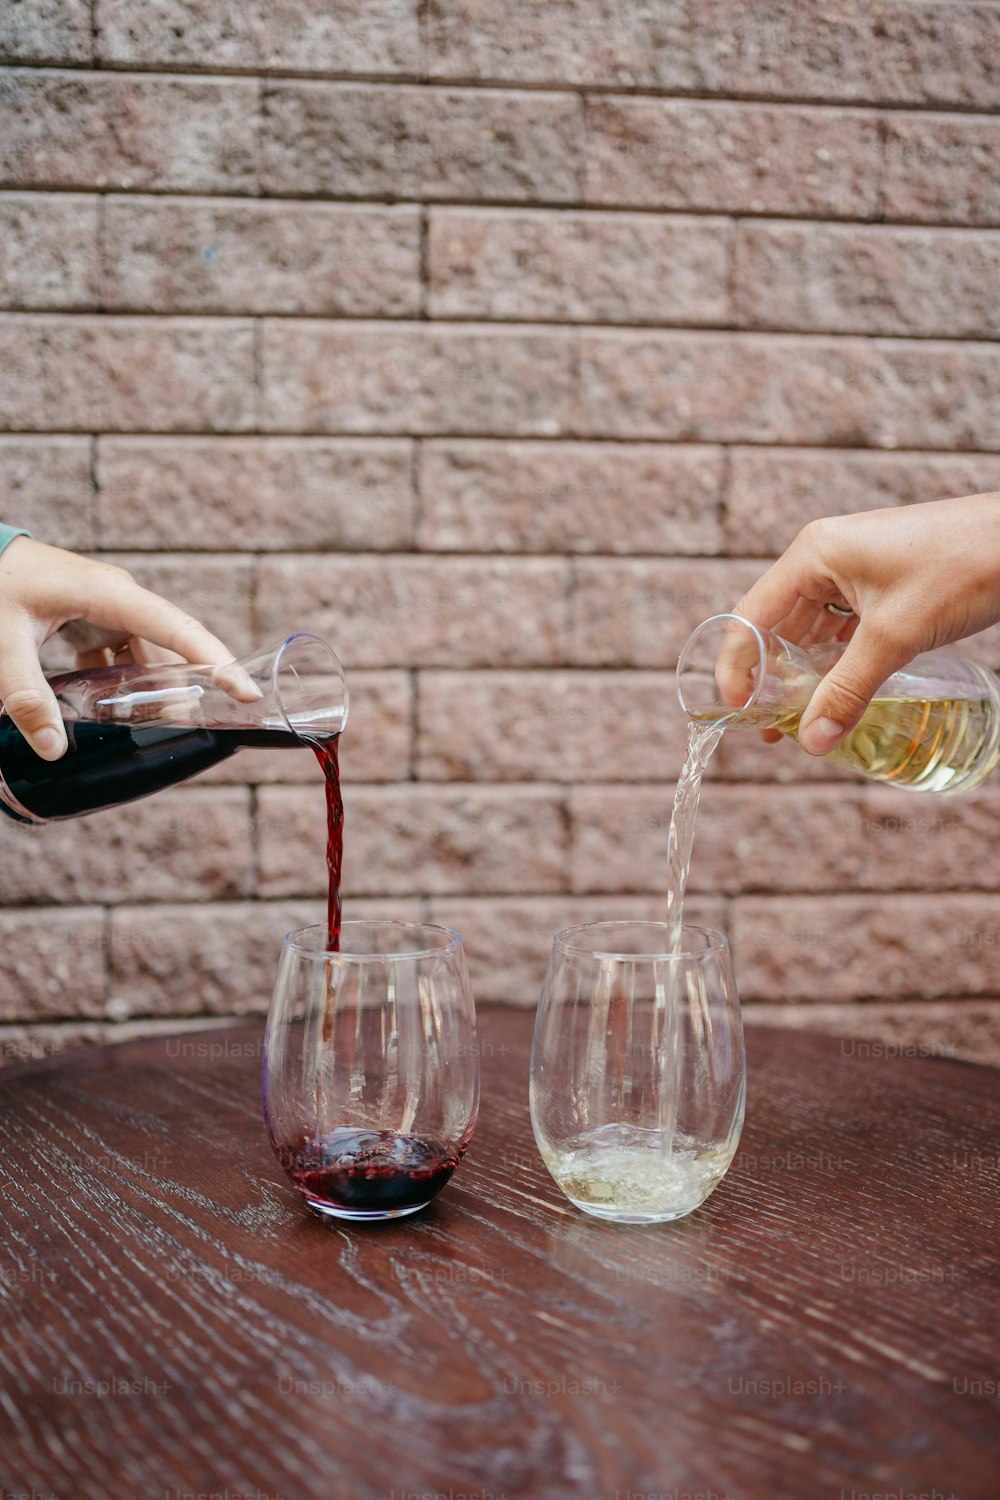 テーブルの上のワイングラスにワインを注ぐ人